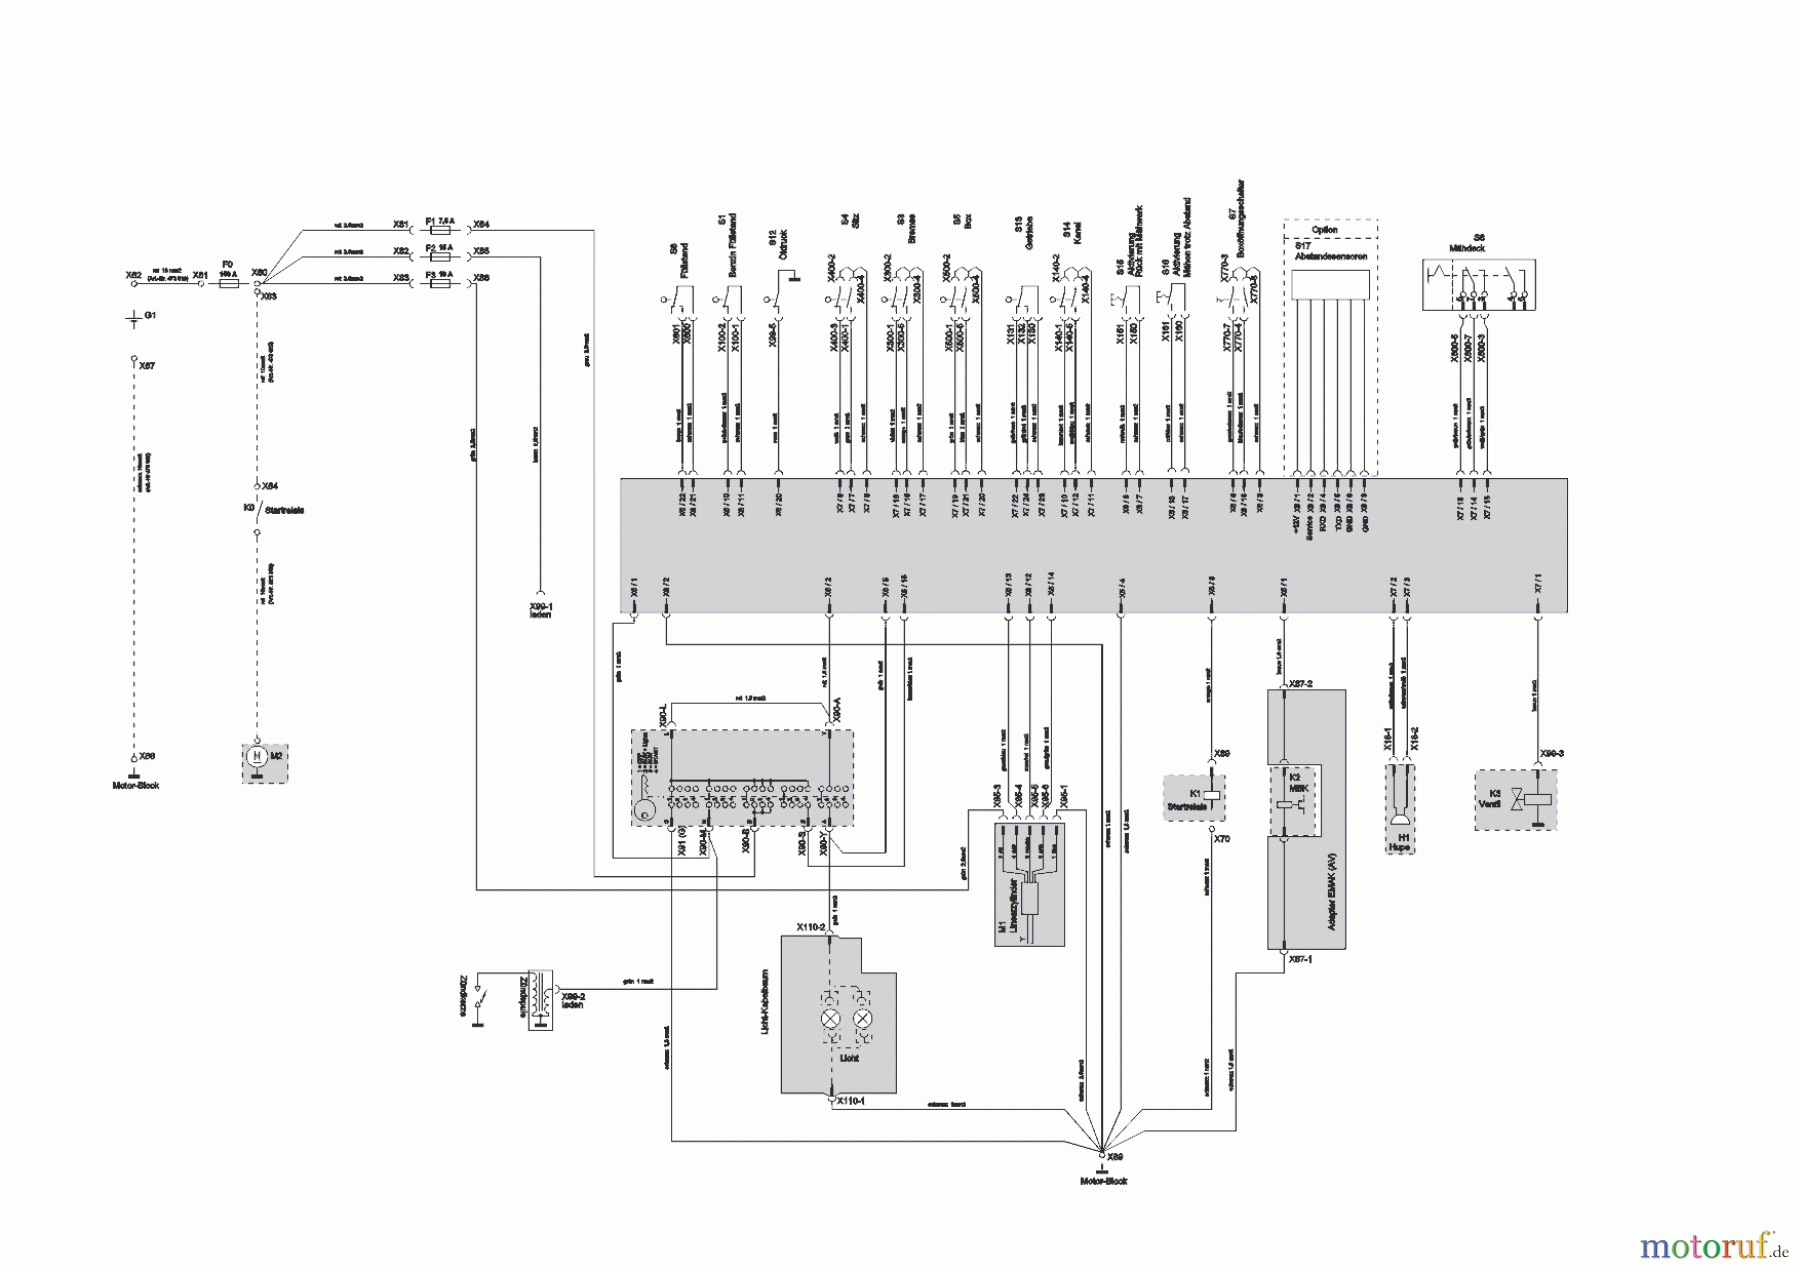  Powerline Gartentechnik Rasentraktor T20-105.4 HDE V2  ab 09/2016 Seite 11